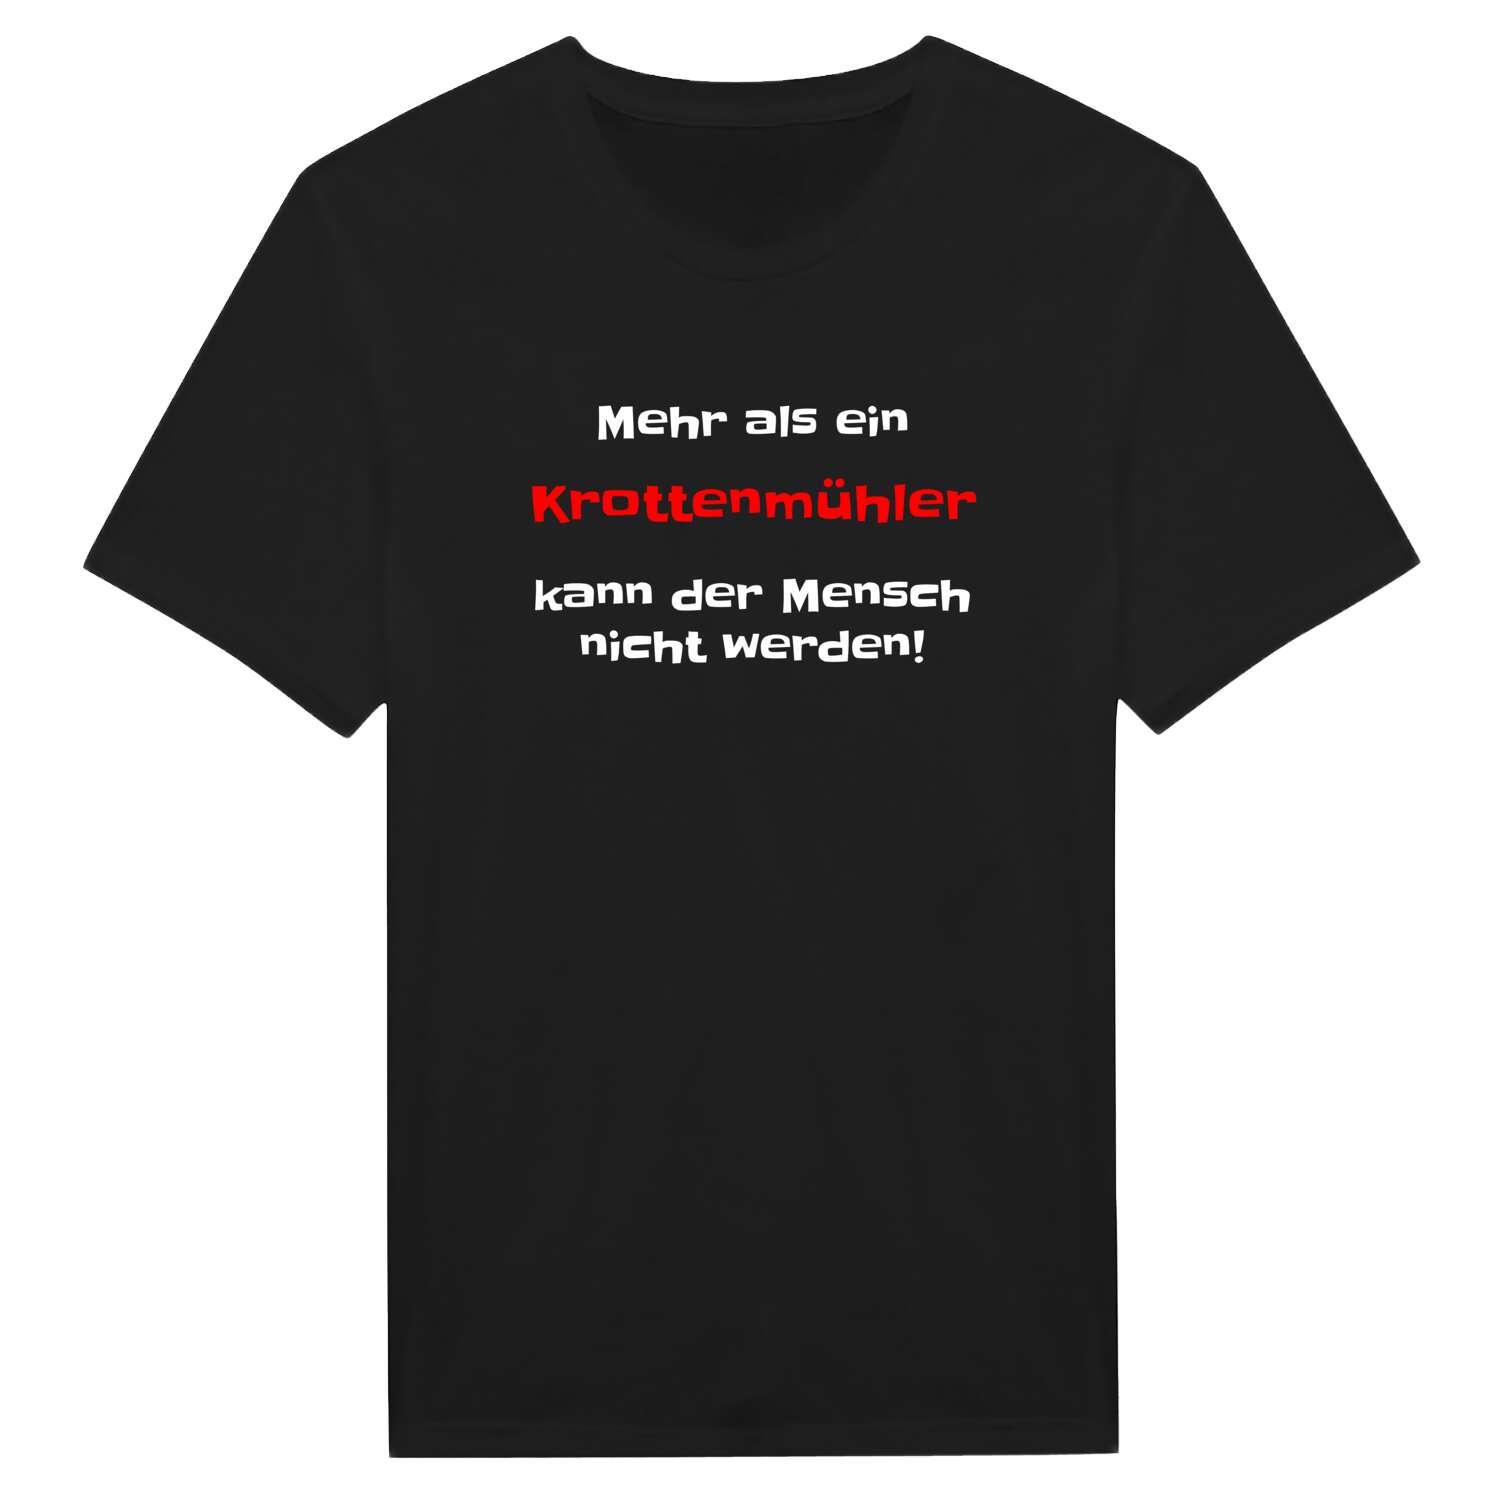 Krottenmühl T-Shirt »Mehr als ein«